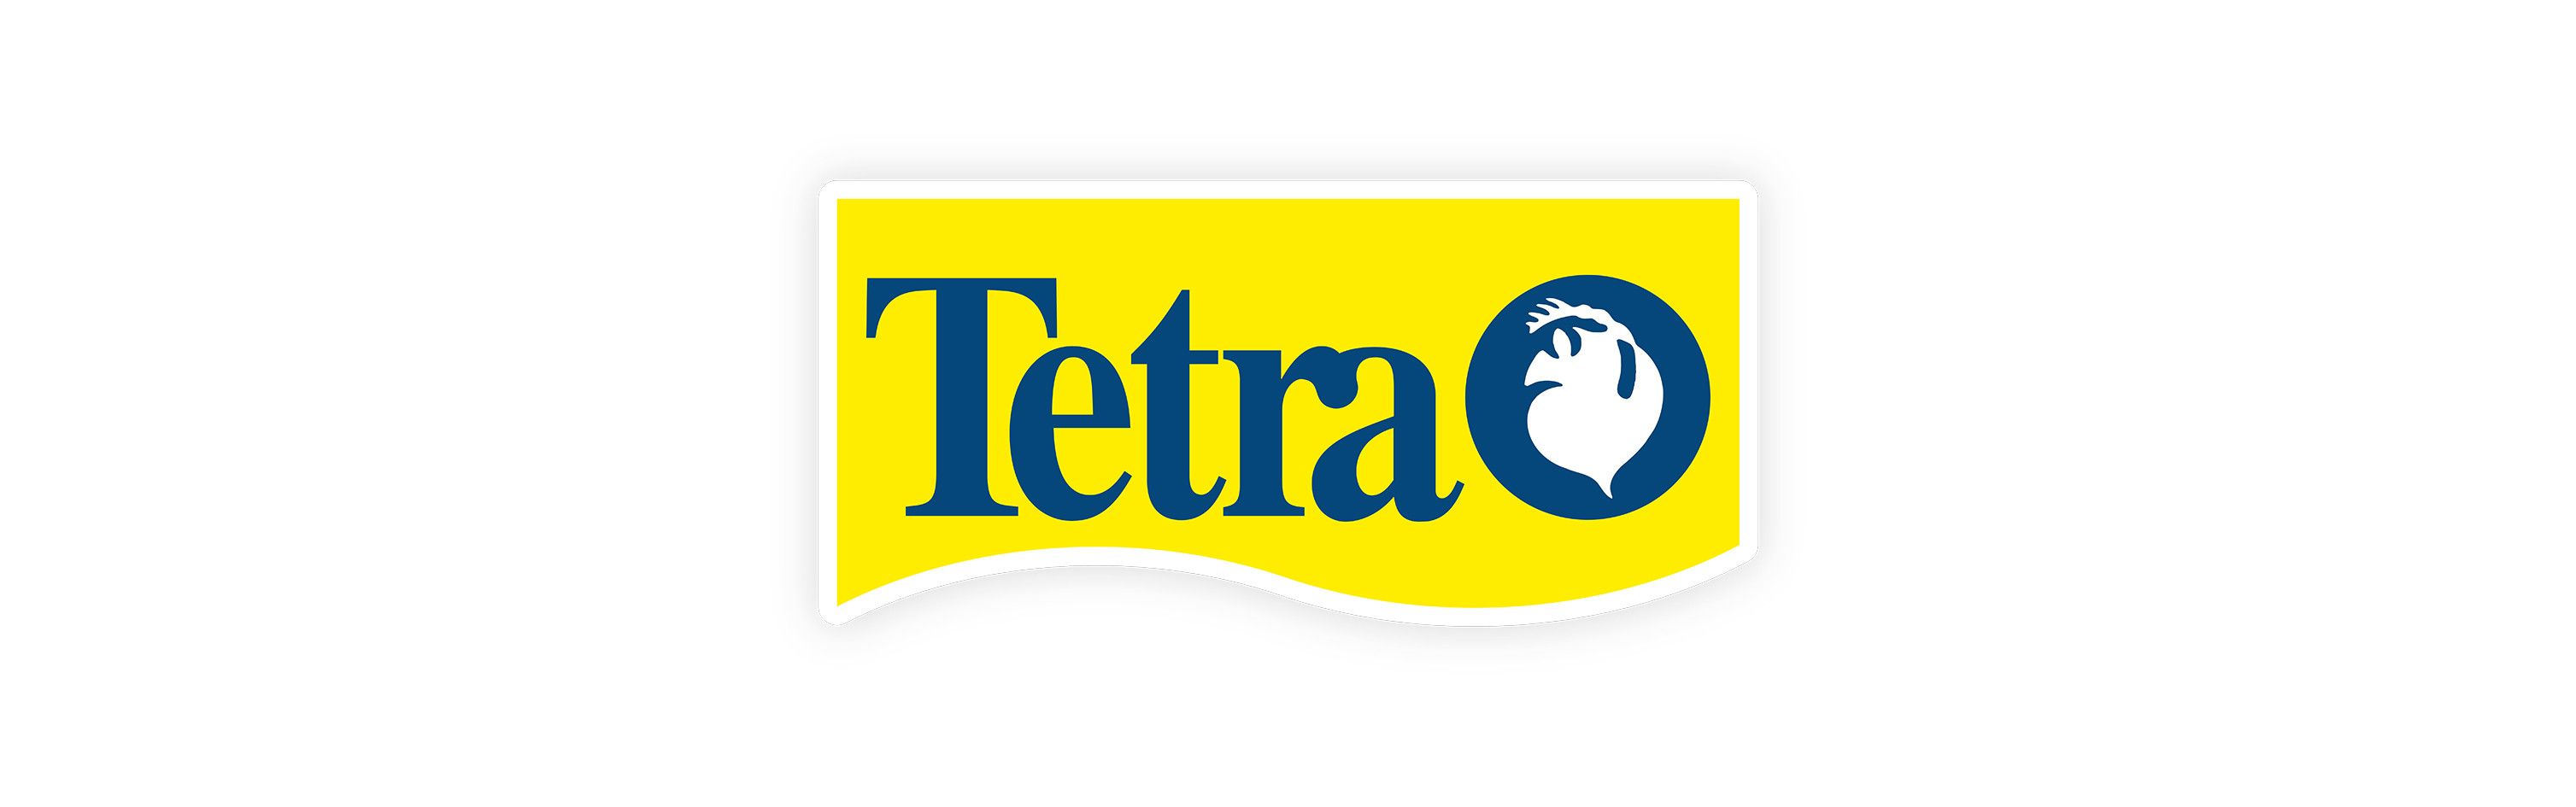 Tetra - TetraMin Granules  Aquasabi - Aquascaping Shop